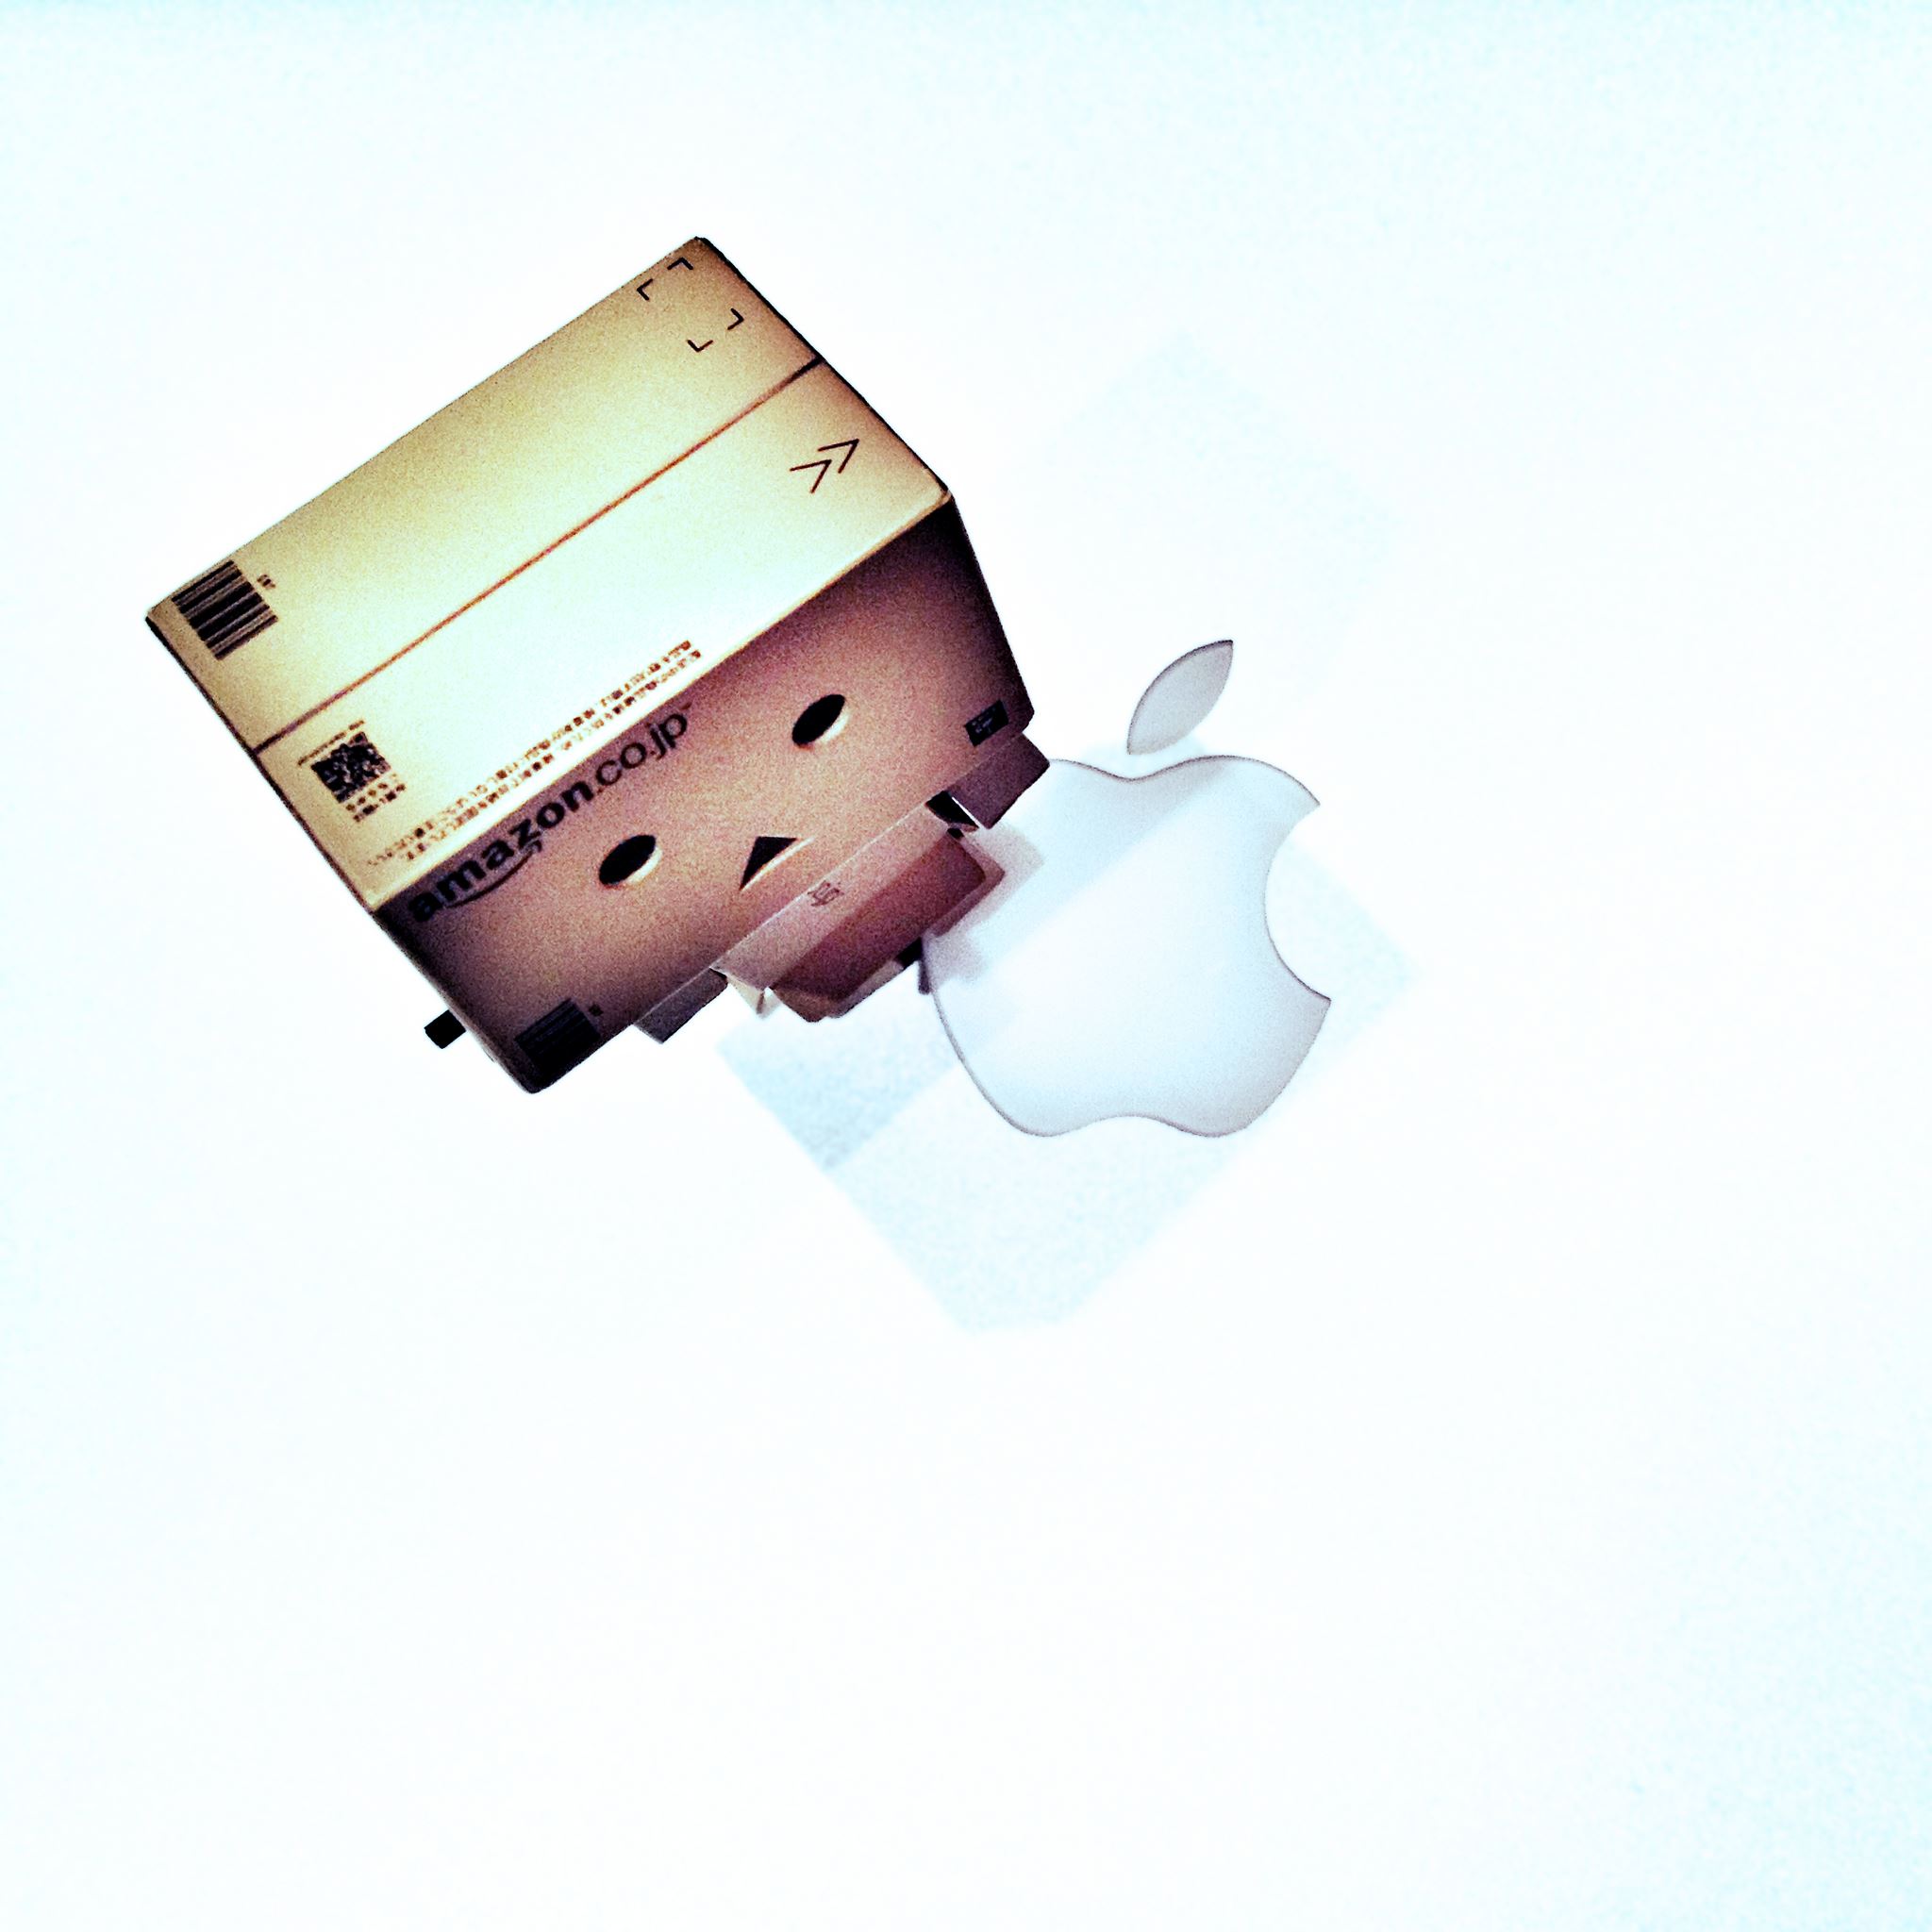 Danbo and Apple iPad Air wallpaper 